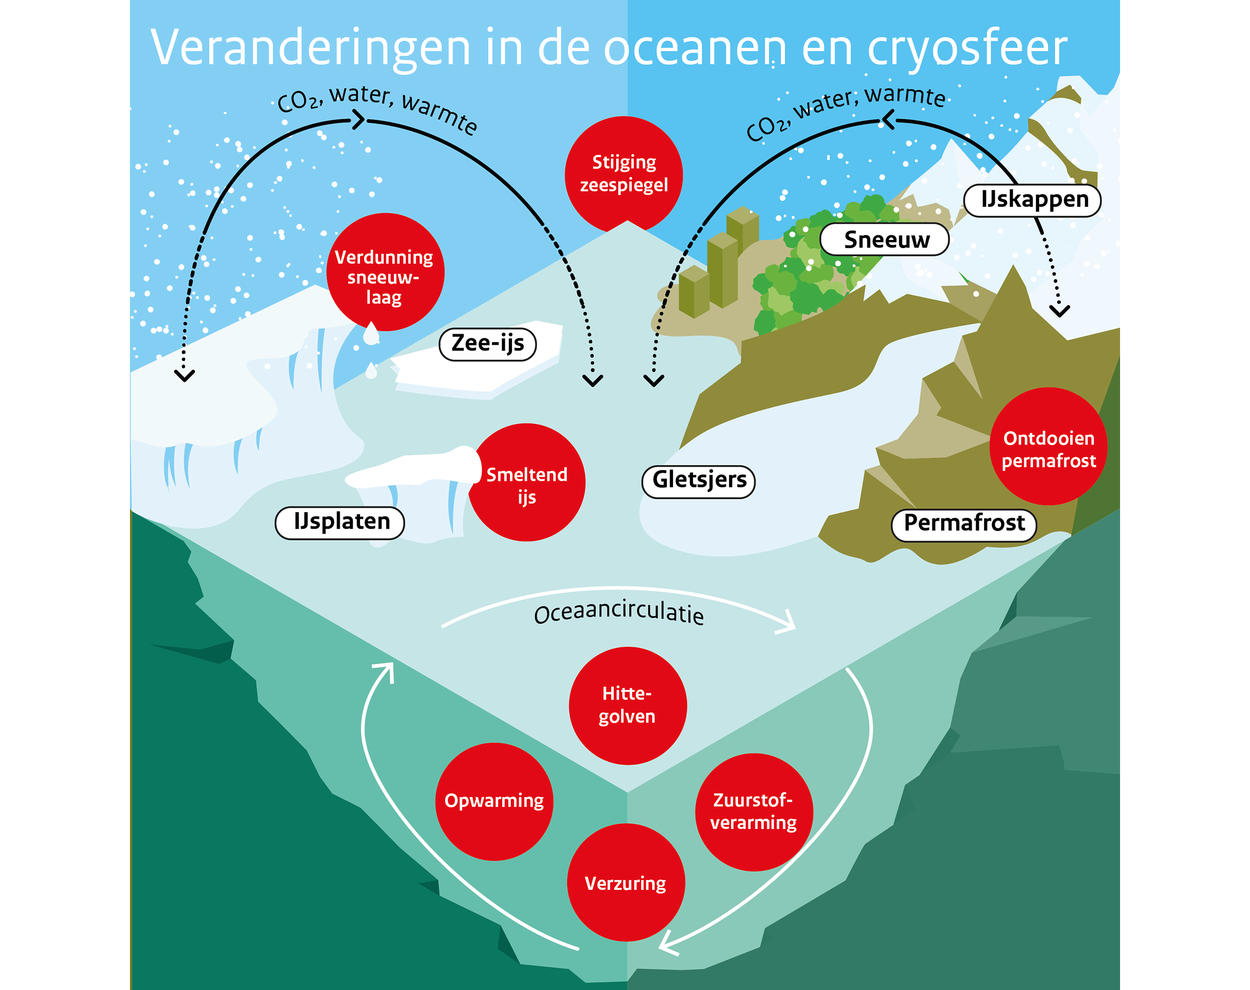 Veranderingen in de oceanen en cryosfeer